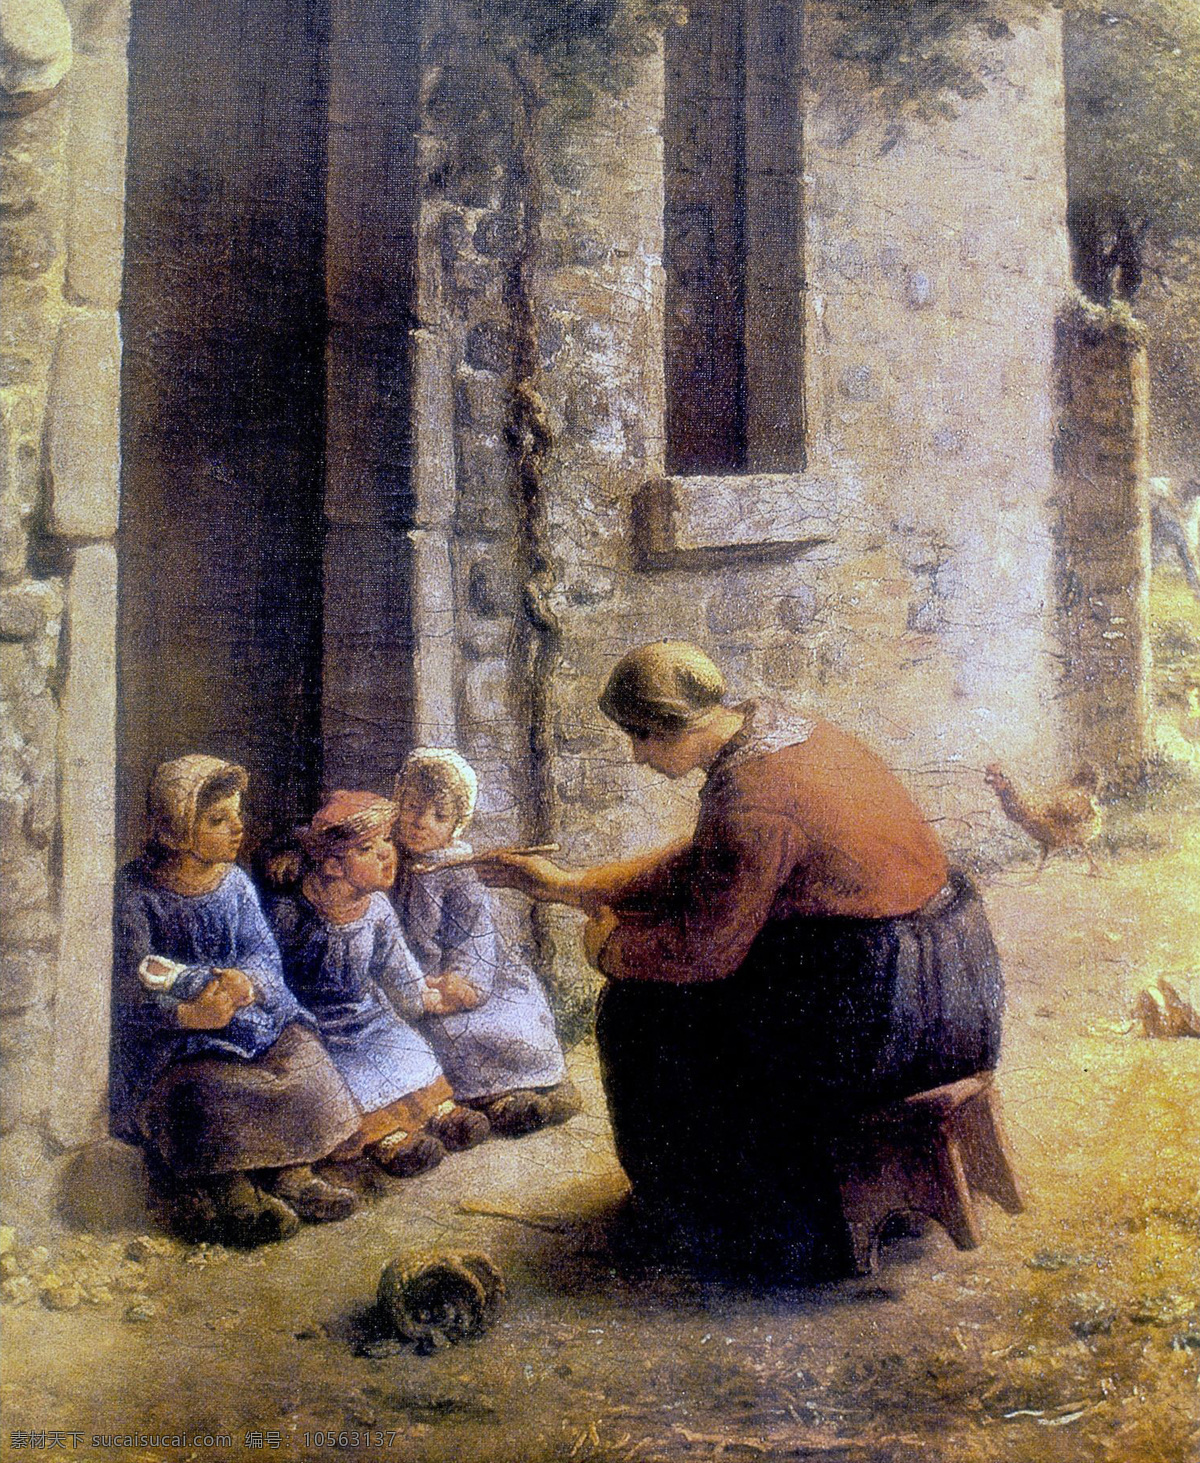 乡村风情 米勒喂食 女人 小孩 乡村 油画 绘画书法 文化艺术